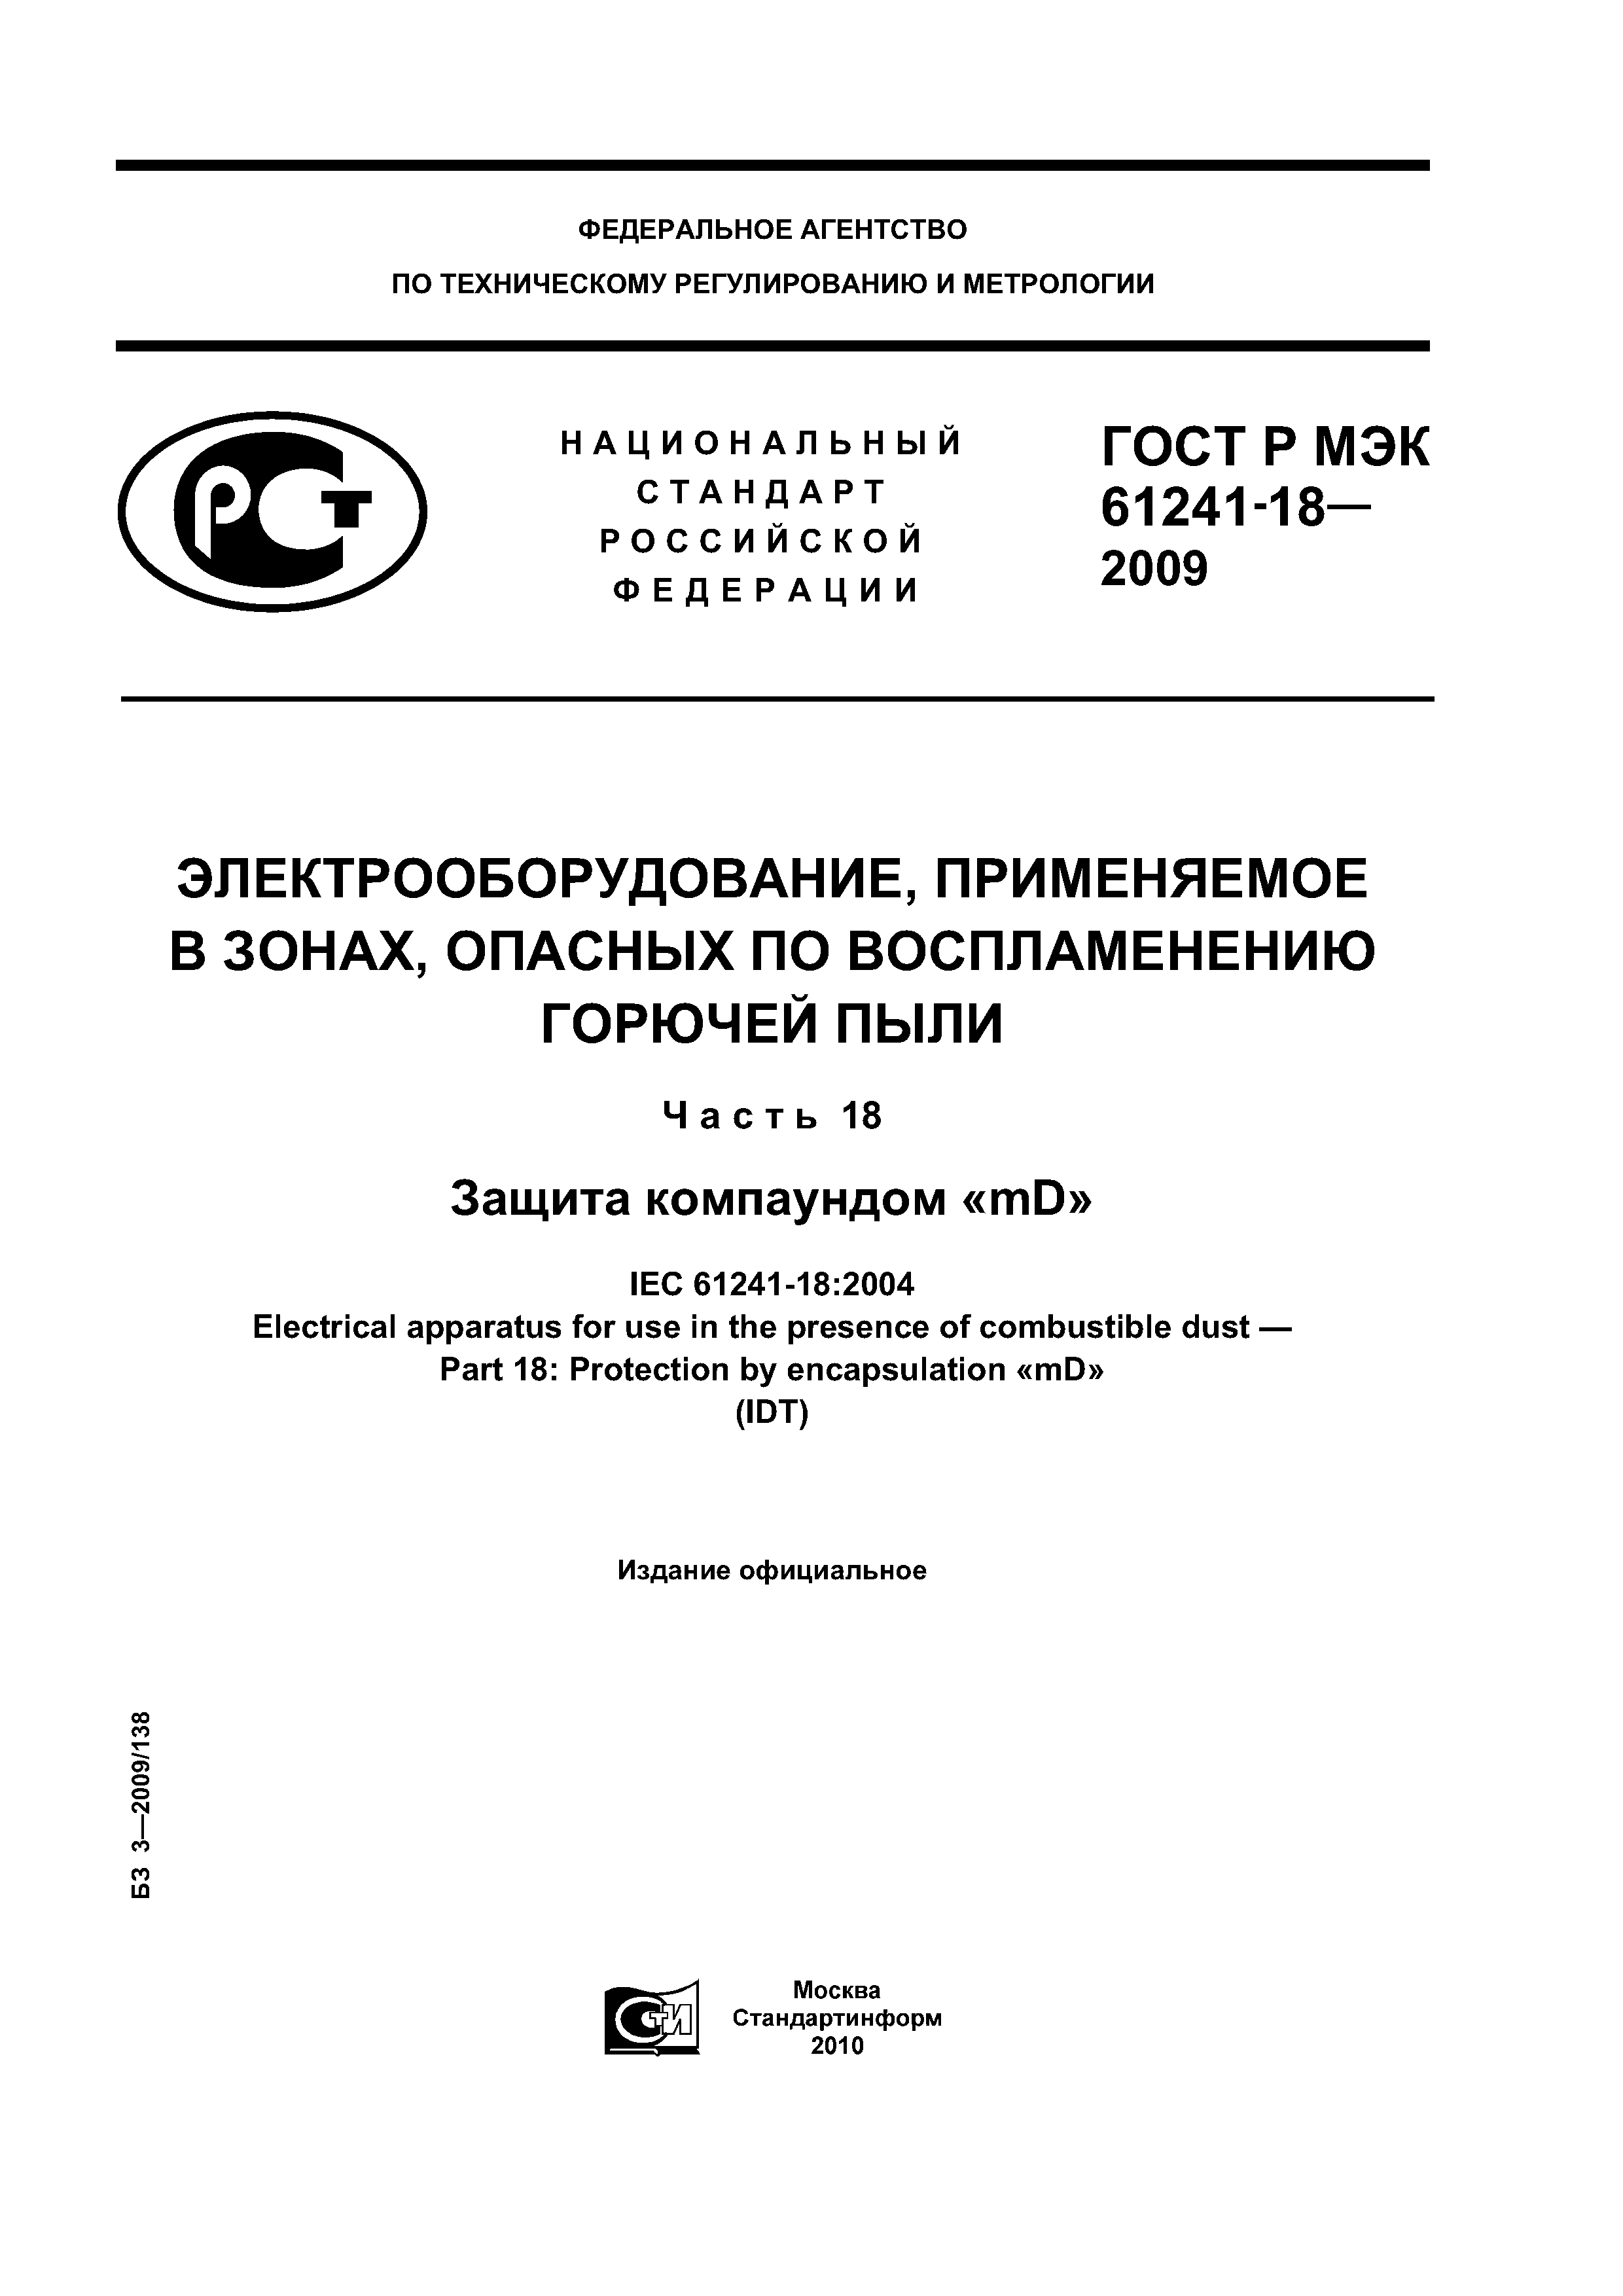 ГОСТ Р МЭК 61241-18-2009